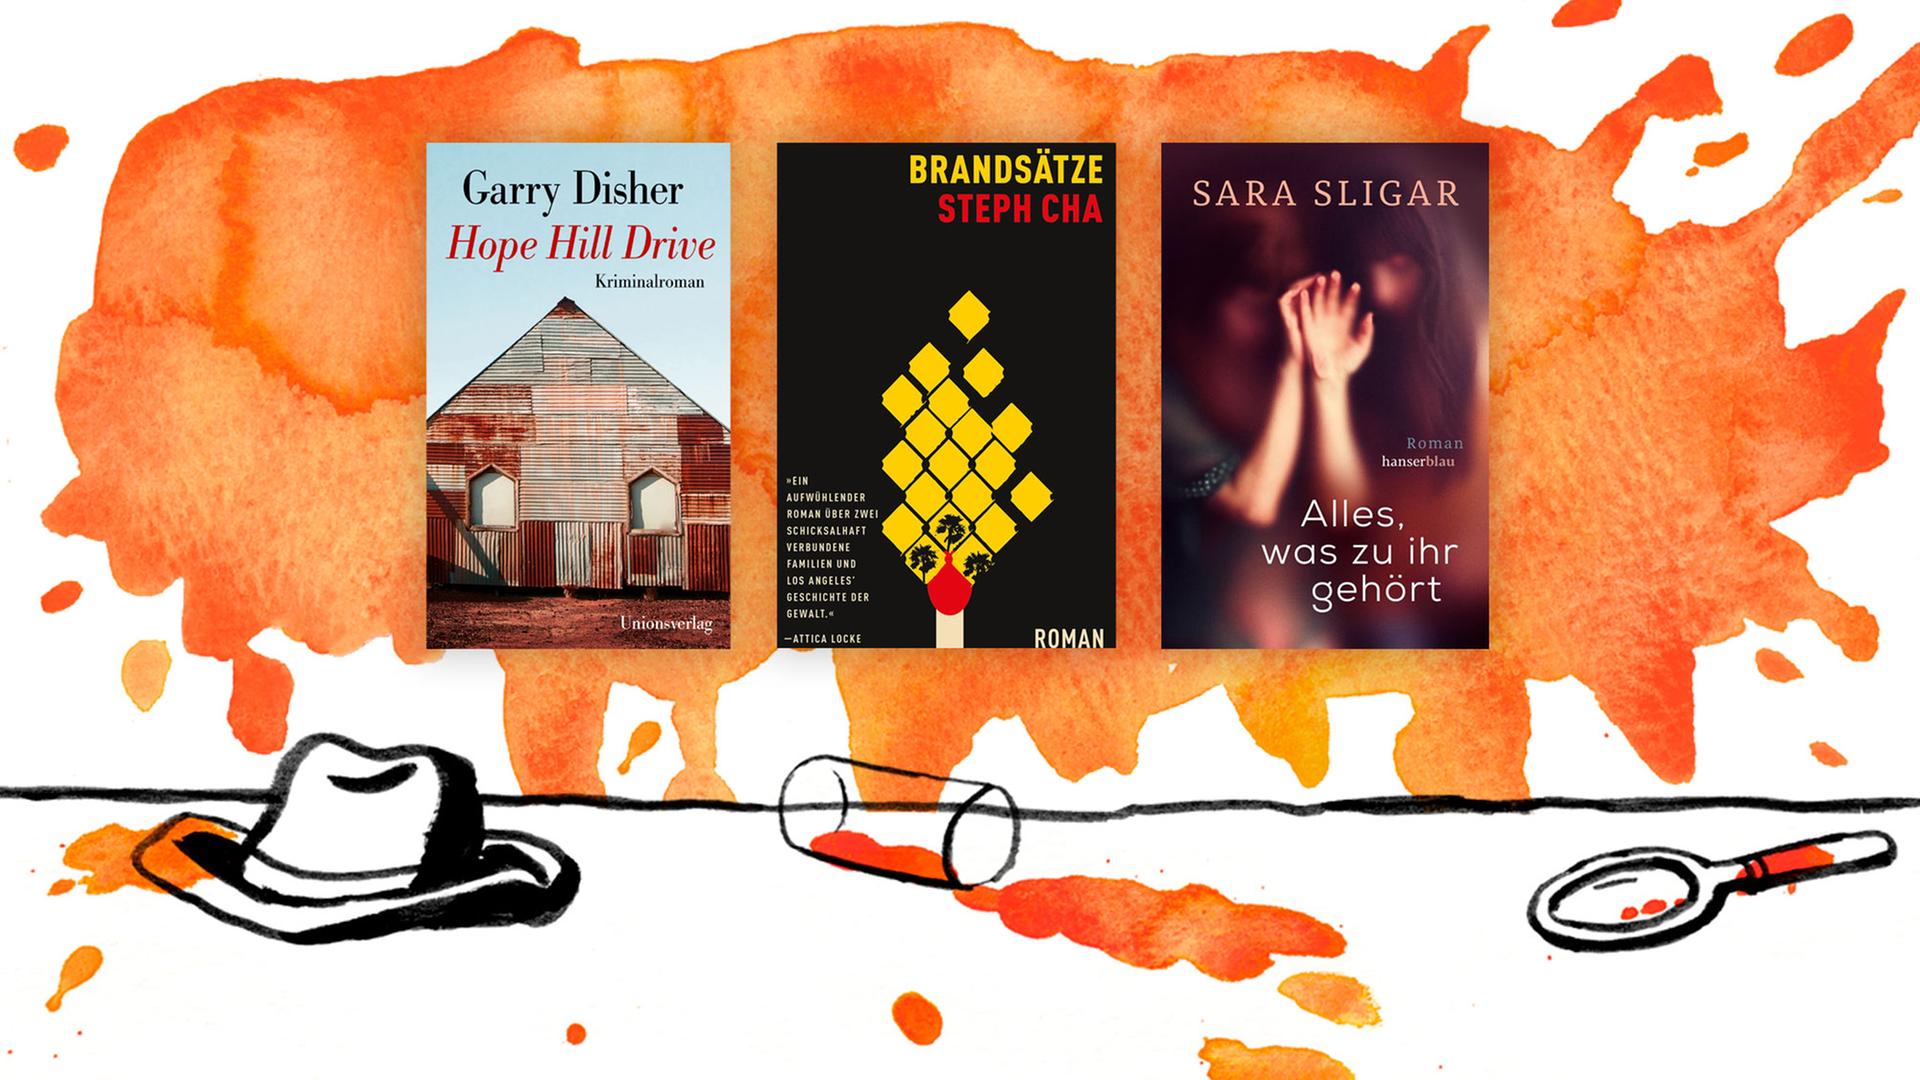 Coverabbildungen der Bücher "Hope Hill Drive" von Garry Disher, Steph Chas "Brandsätze" und "Alles, was zu ihr gehört" von Sara Sligar.